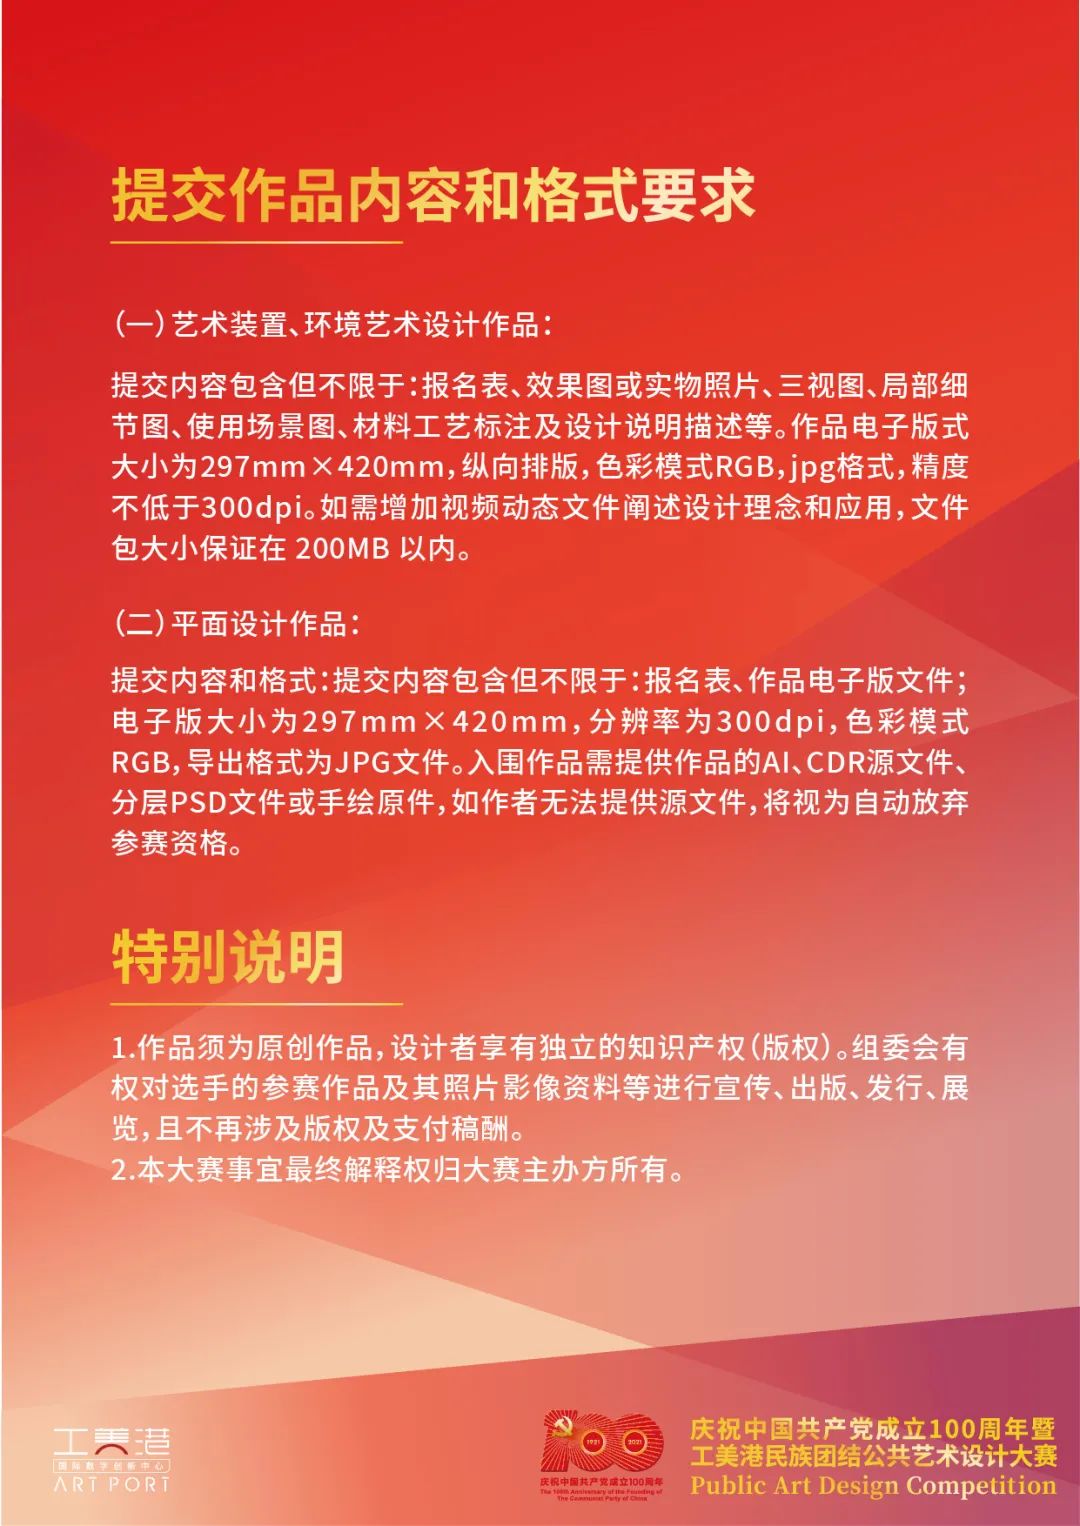 2021慶祝中國共產黨成立100週年暨工美港民族團結公共藝術設計大賽